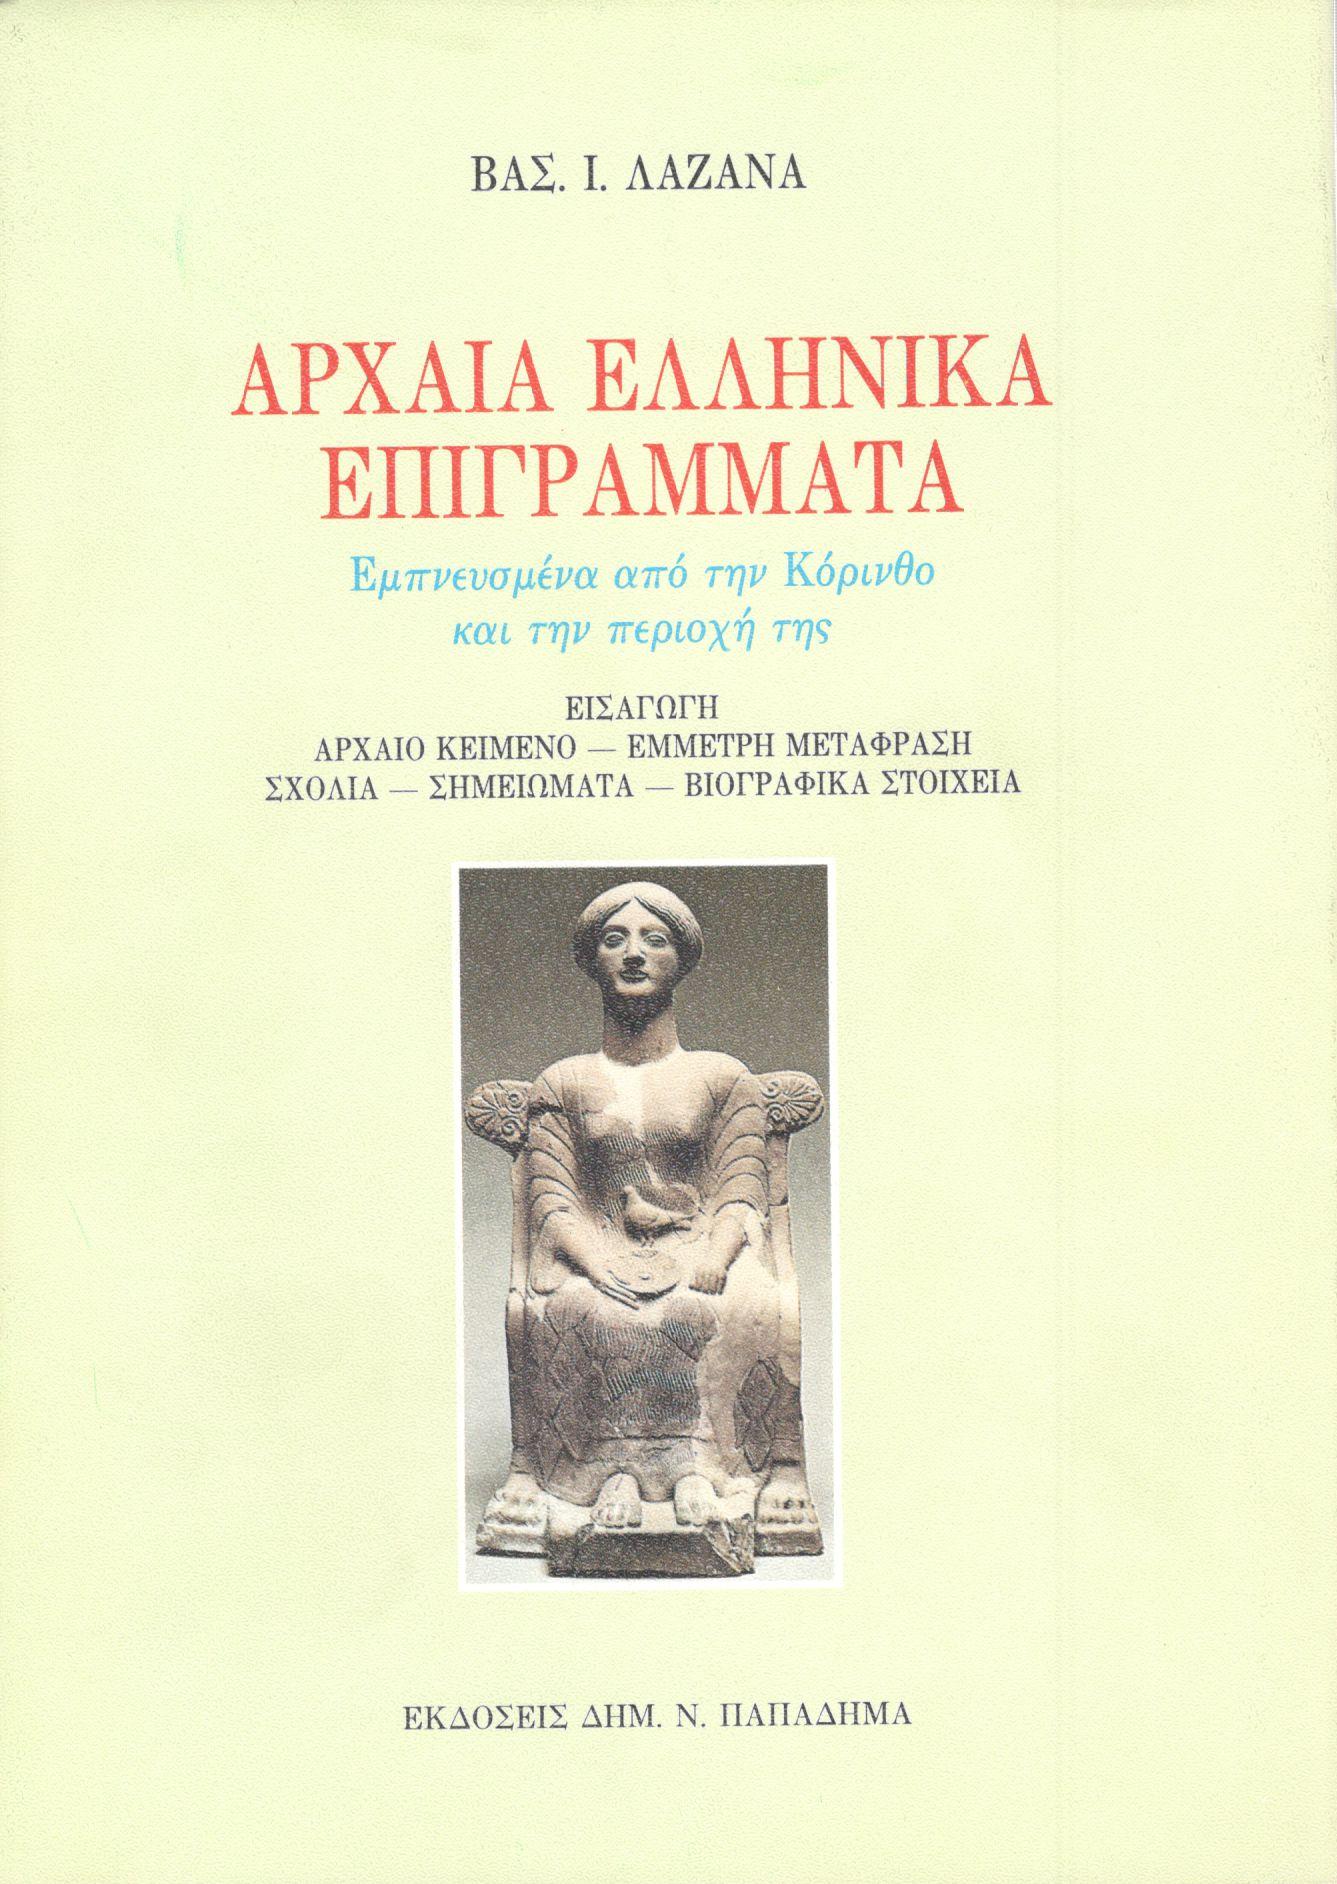 Αρχαία ελληνικά επιγράμματα εμπνευσμένα από την Κόρινθο και την περιοχή της